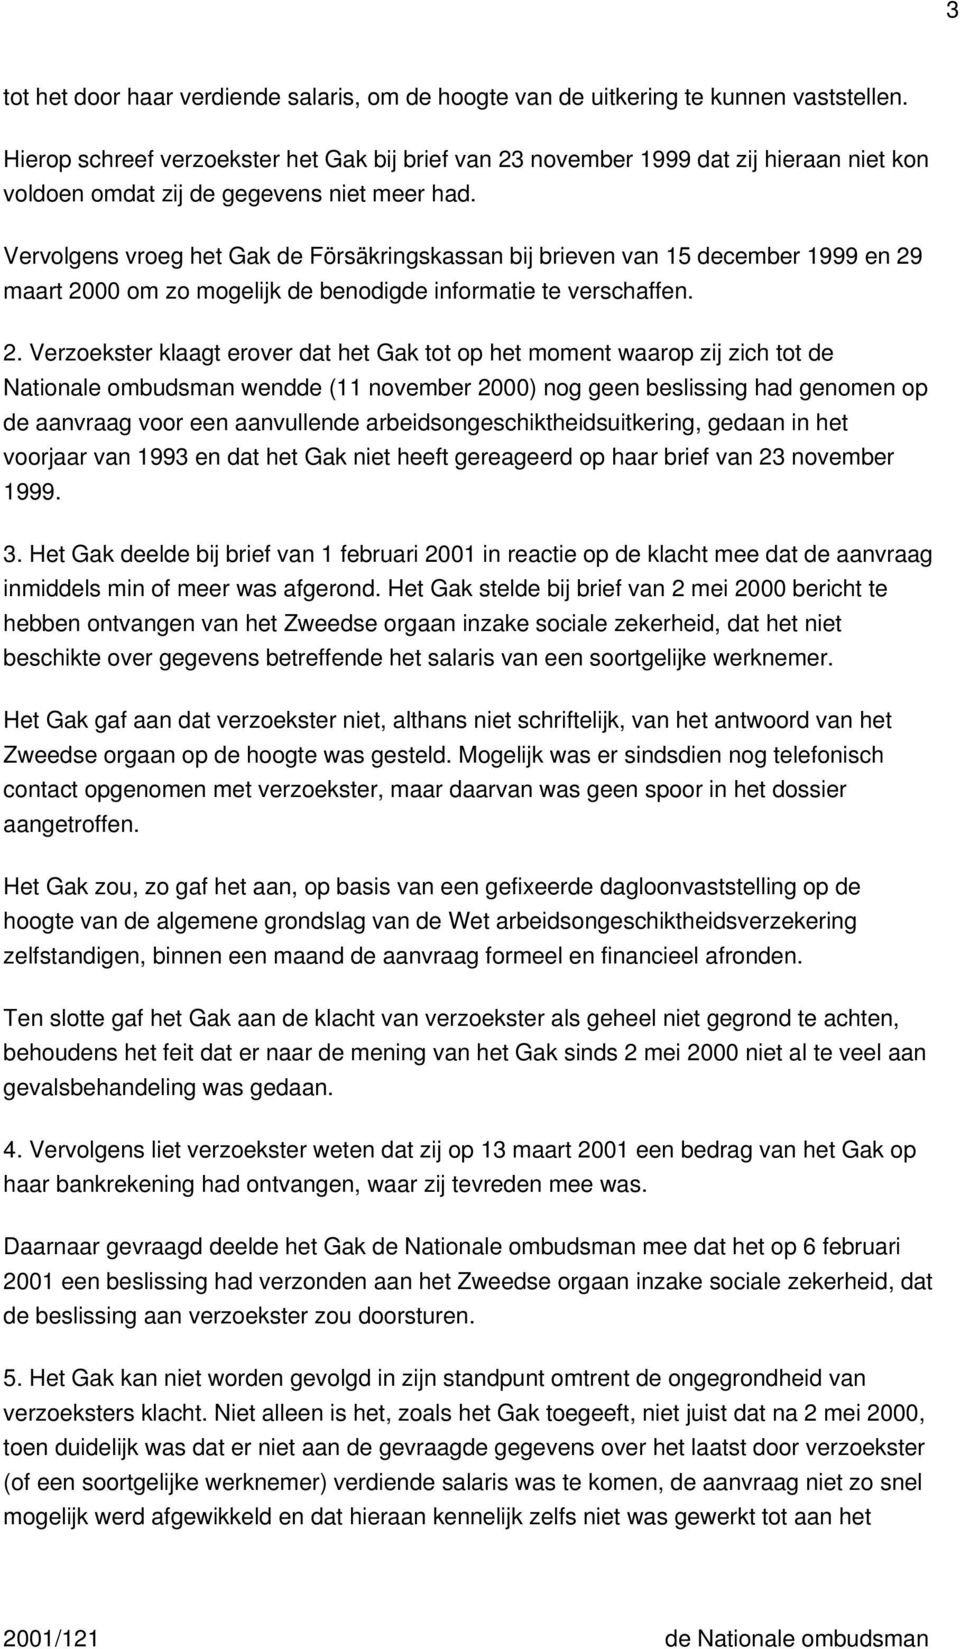 Vervolgens vroeg het Gak de Försäkringskassan bij brieven van 15 december 1999 en 29